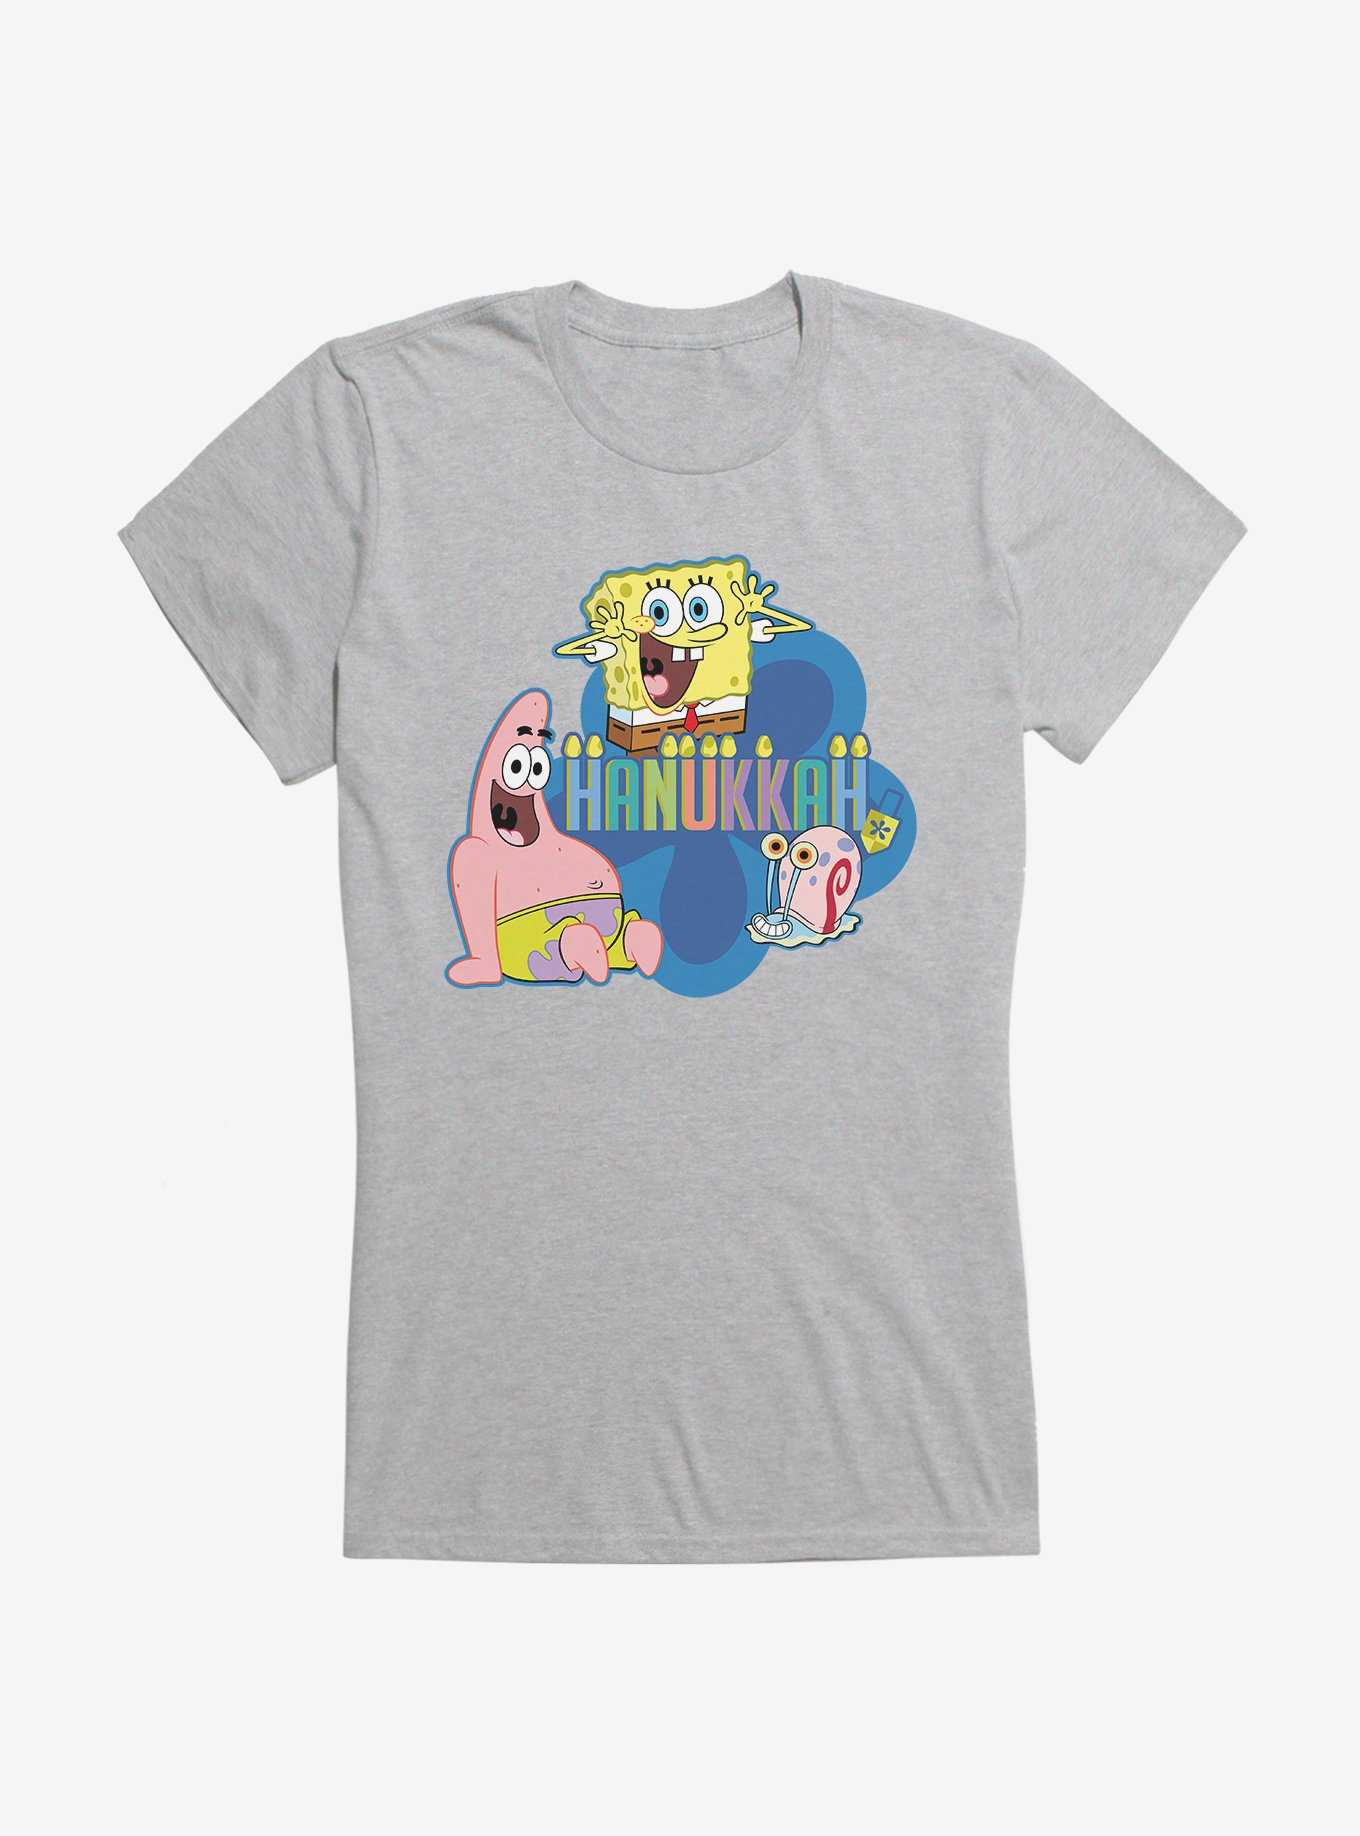 SpongeBob SquarePants Hanukkah Trio Girls T-Shirt, , hi-res